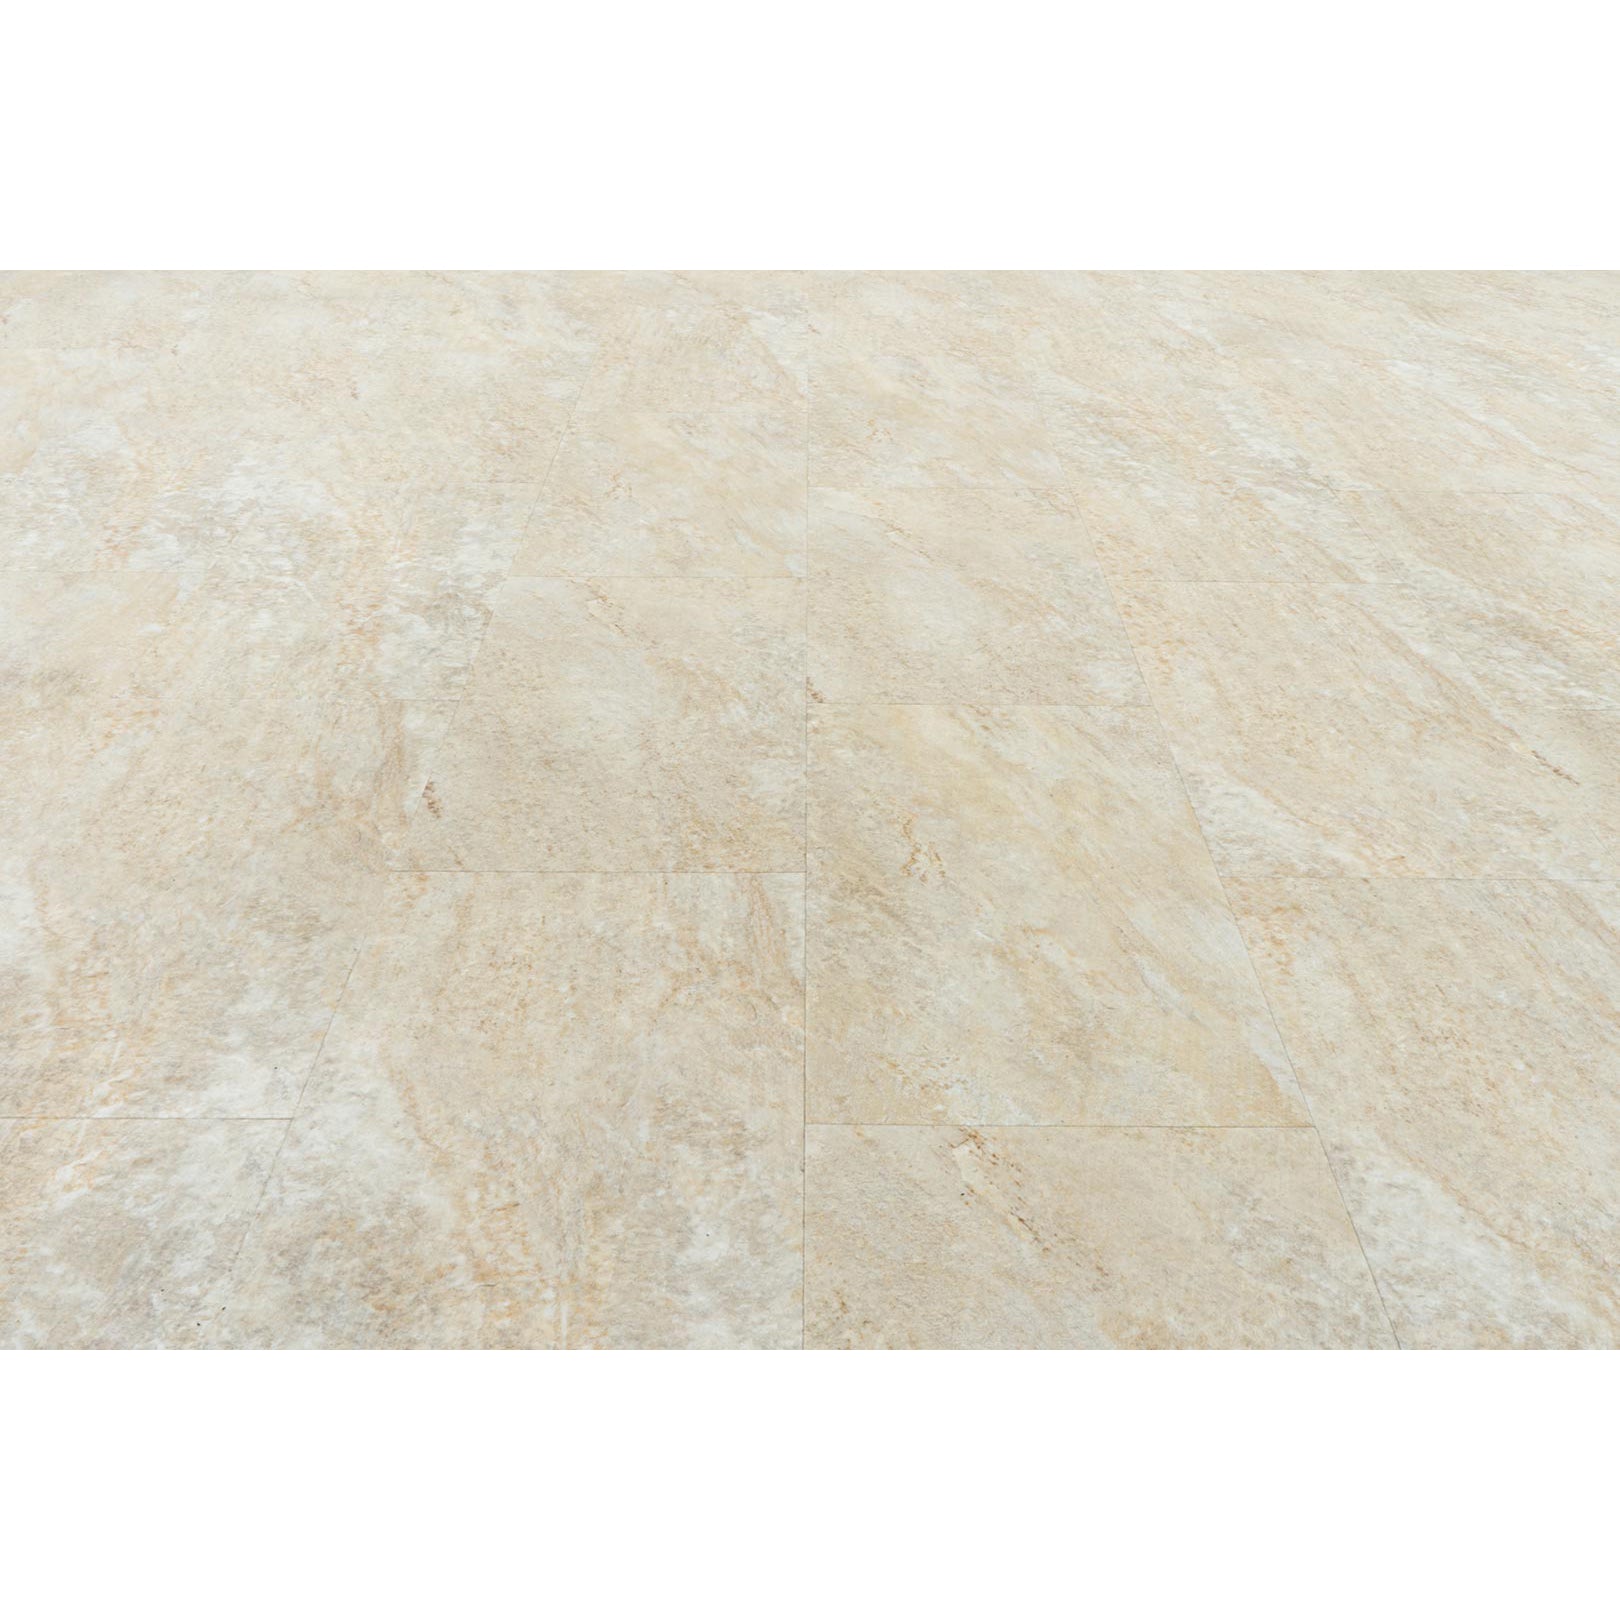 Provenza Floors - Stonescape Luxury Vinyl Plank - Desert View